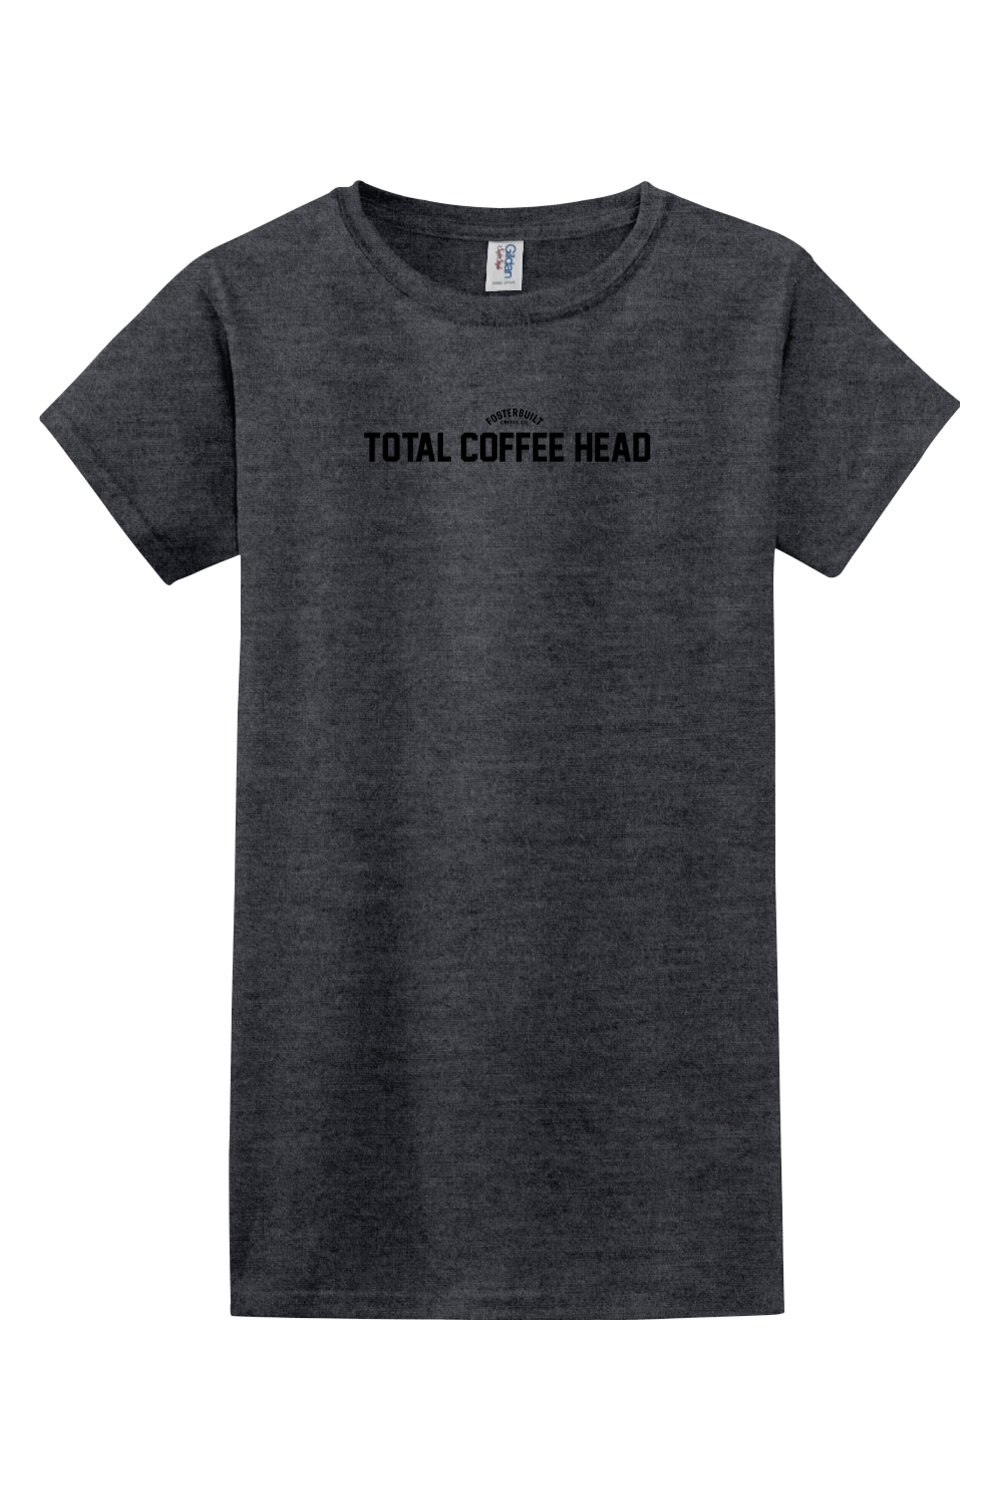 TOTAL COFFEE HEAD - Ladies T-Shirt